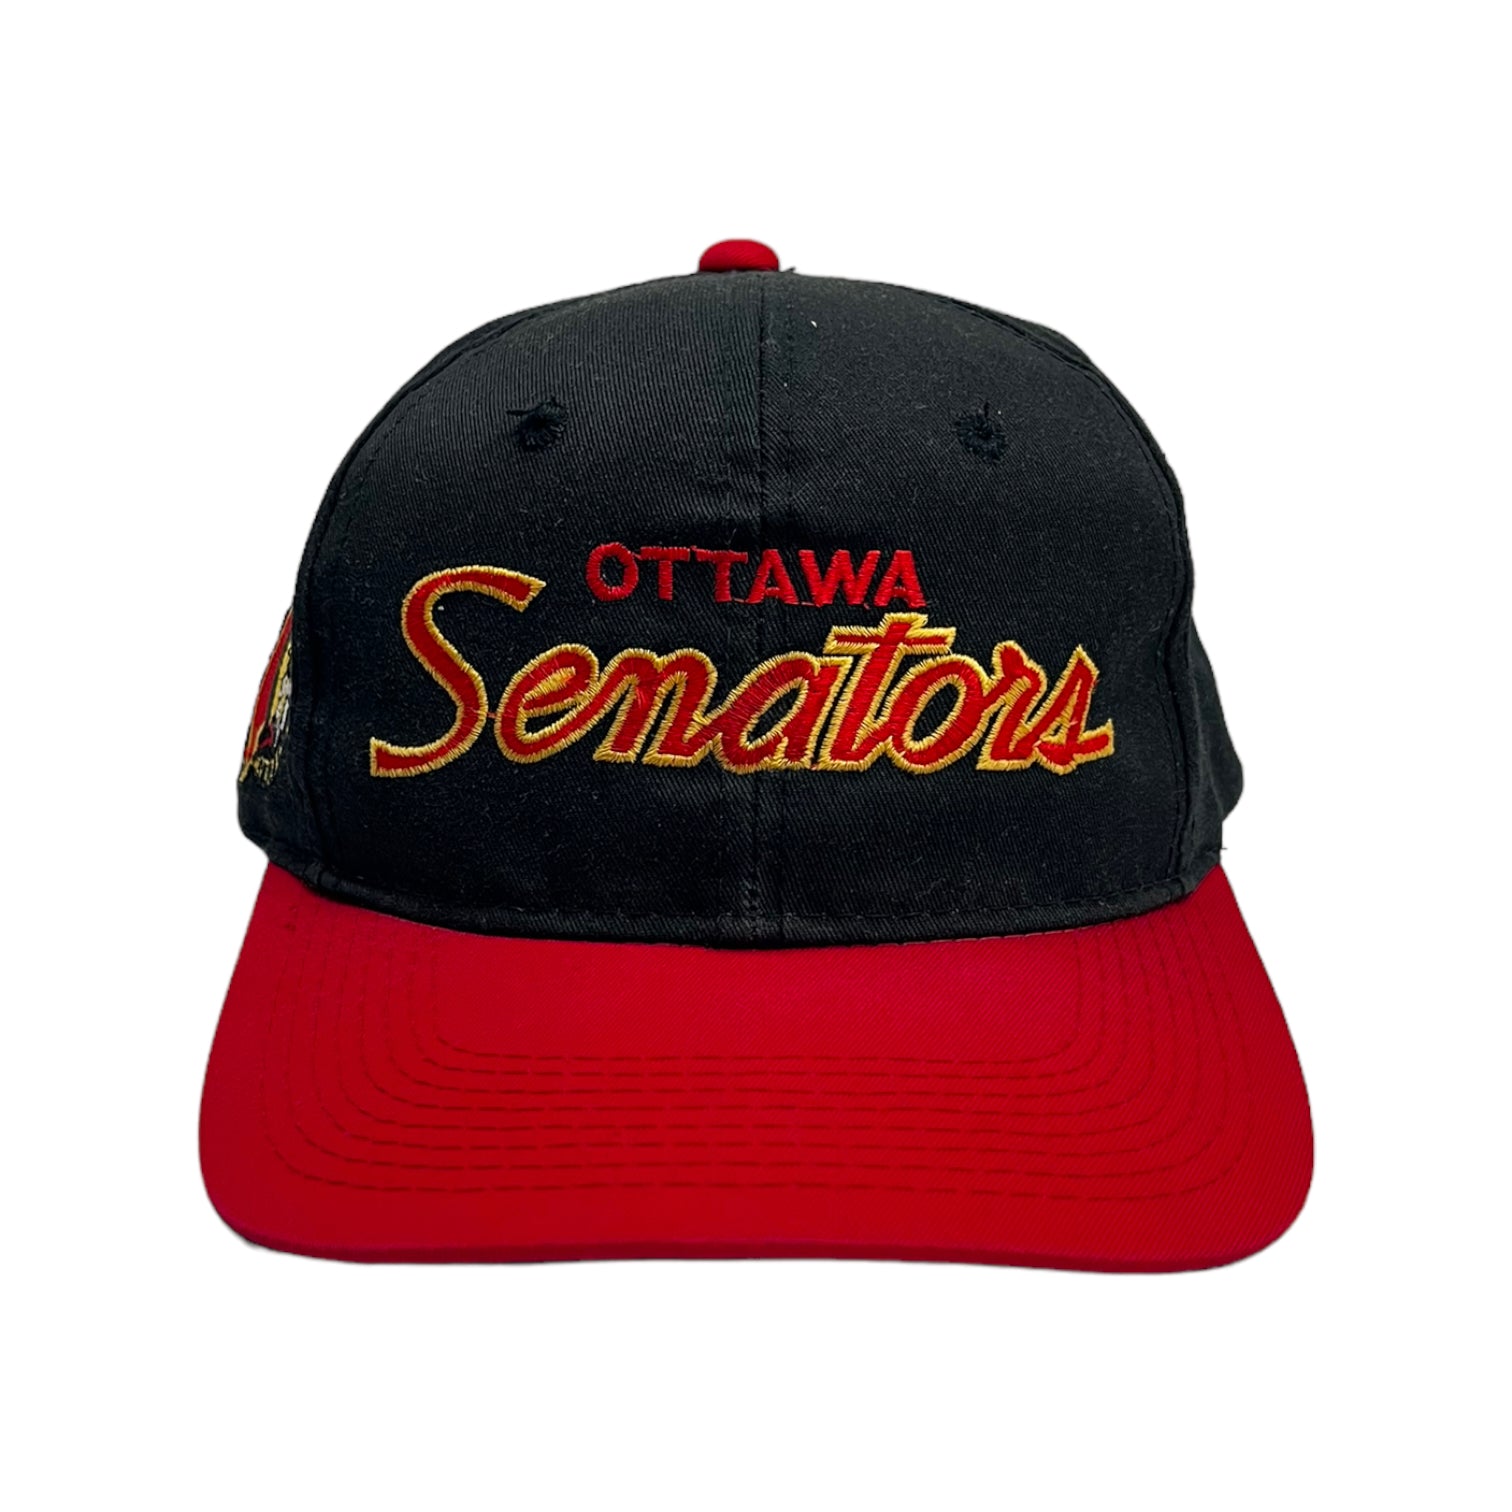 Vintage Ottawa Senators Sports Specialties Script Hat